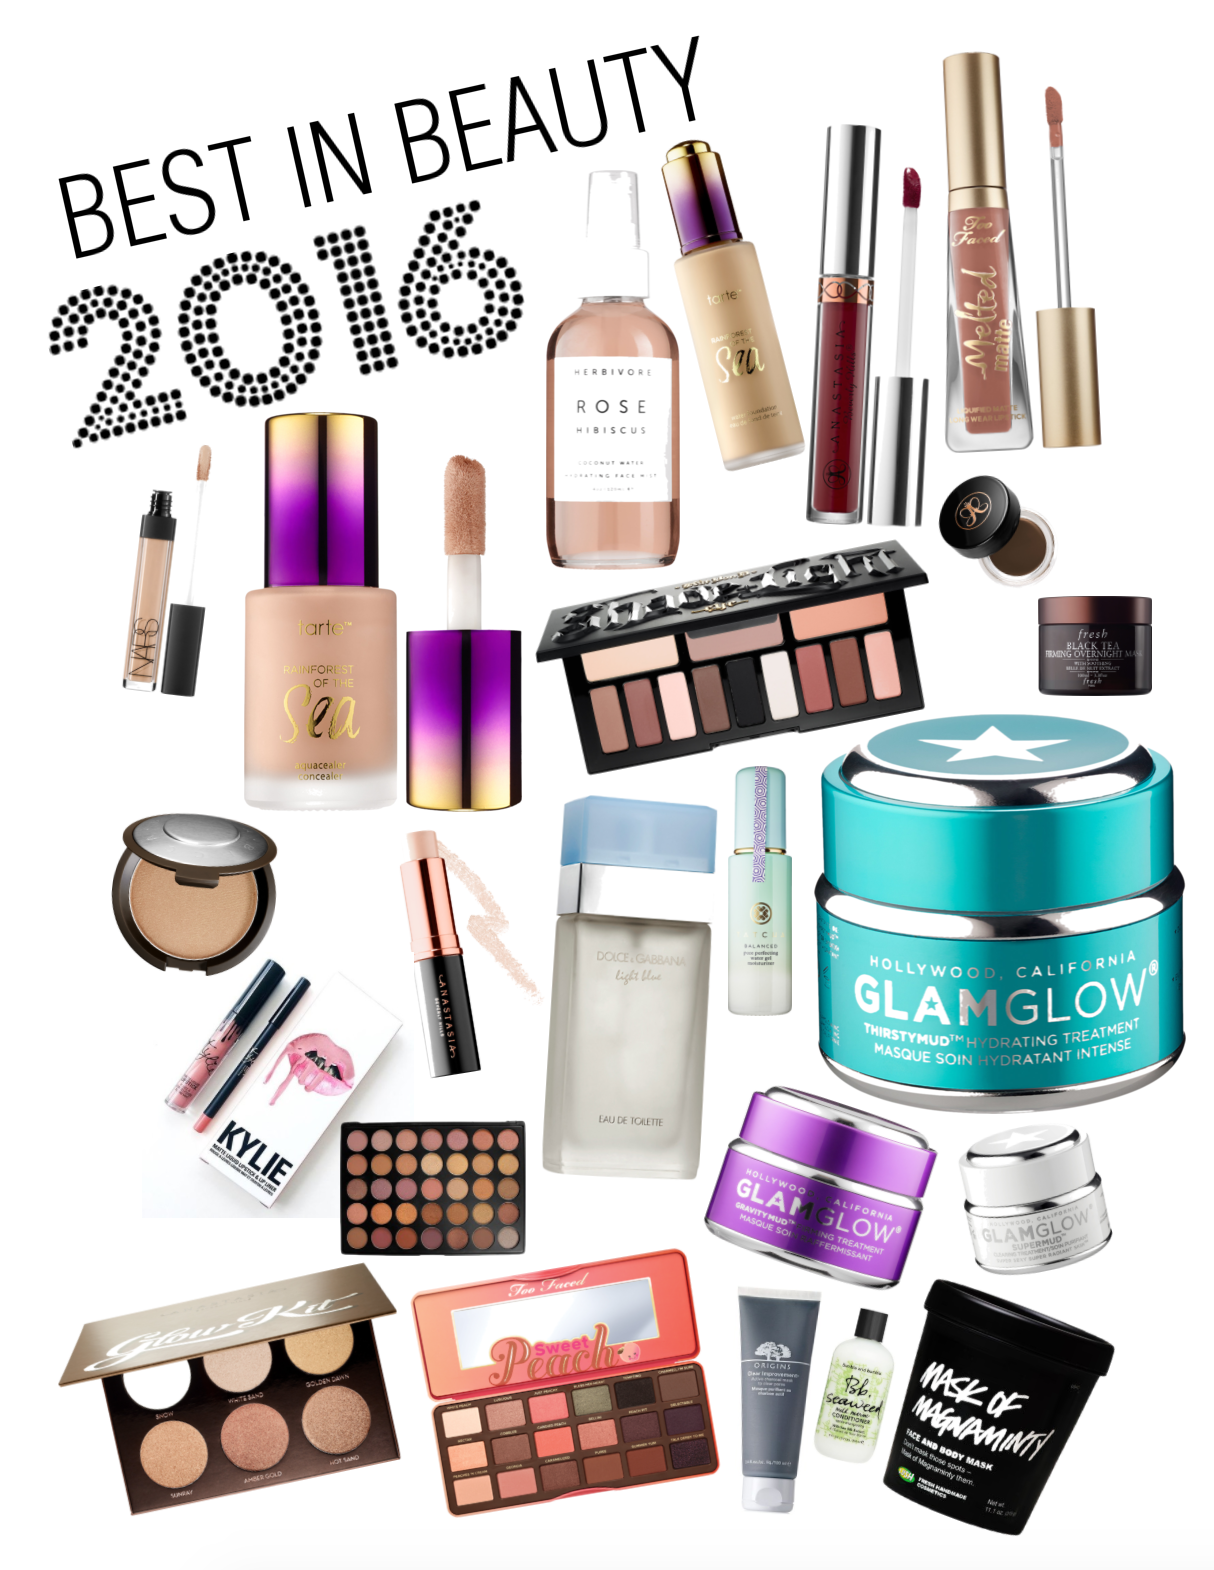 Best in Beauty 2016